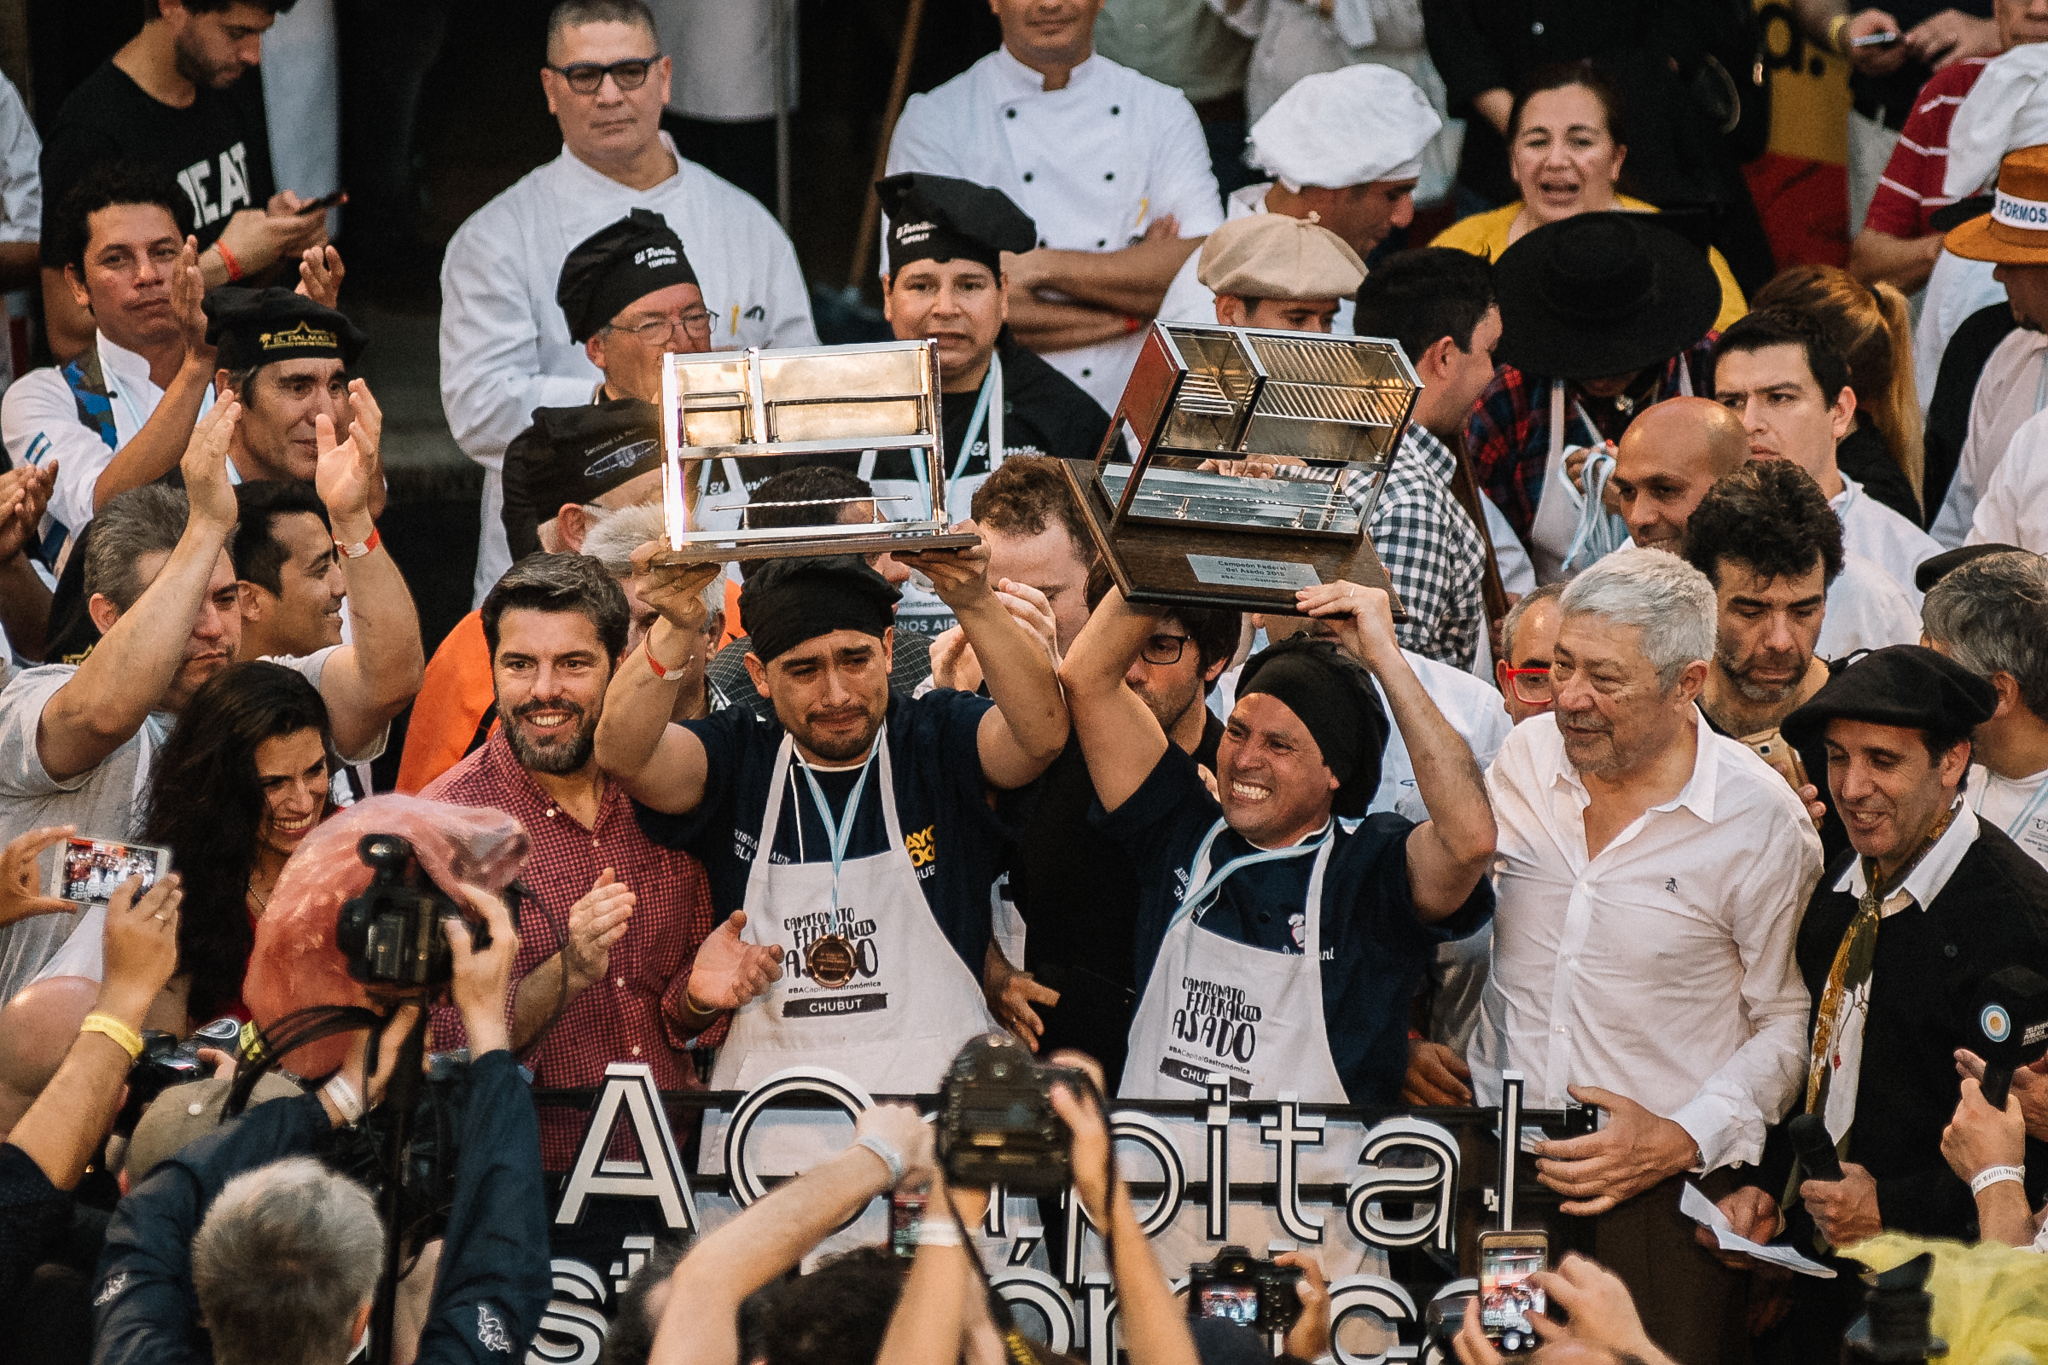 El Campeonato Federal del Asado busca sus 24 concursantes